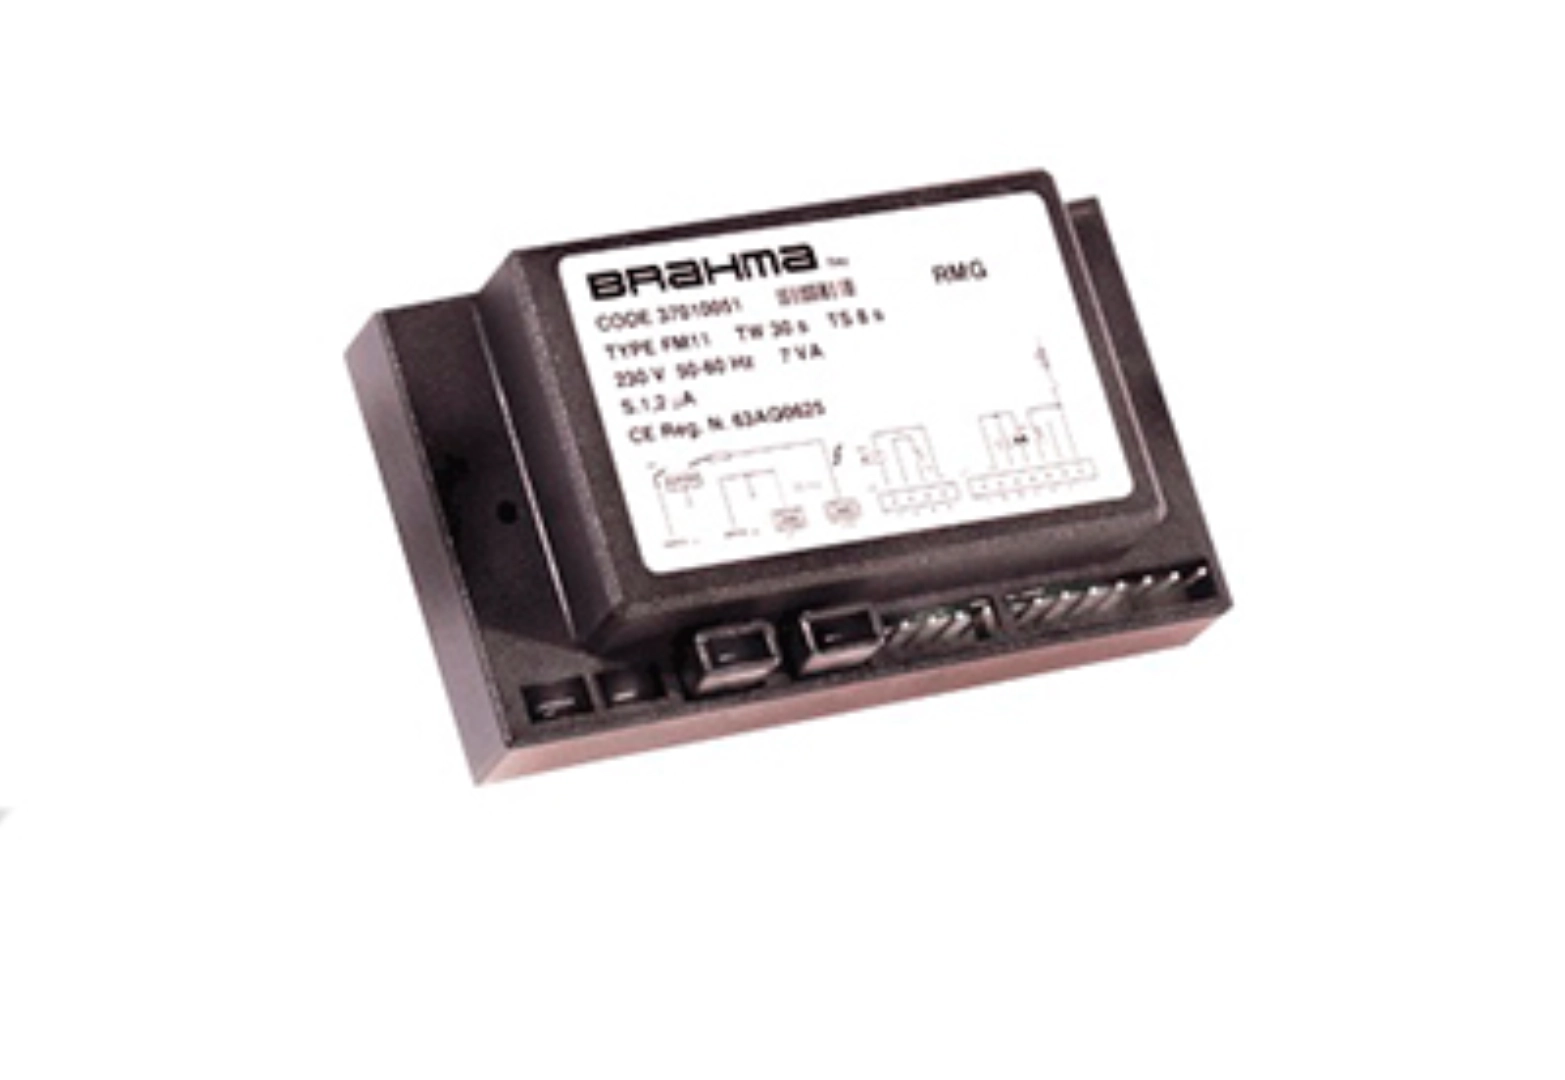 Centralita Brahma Miniflat FM11 Tw30 Ts8